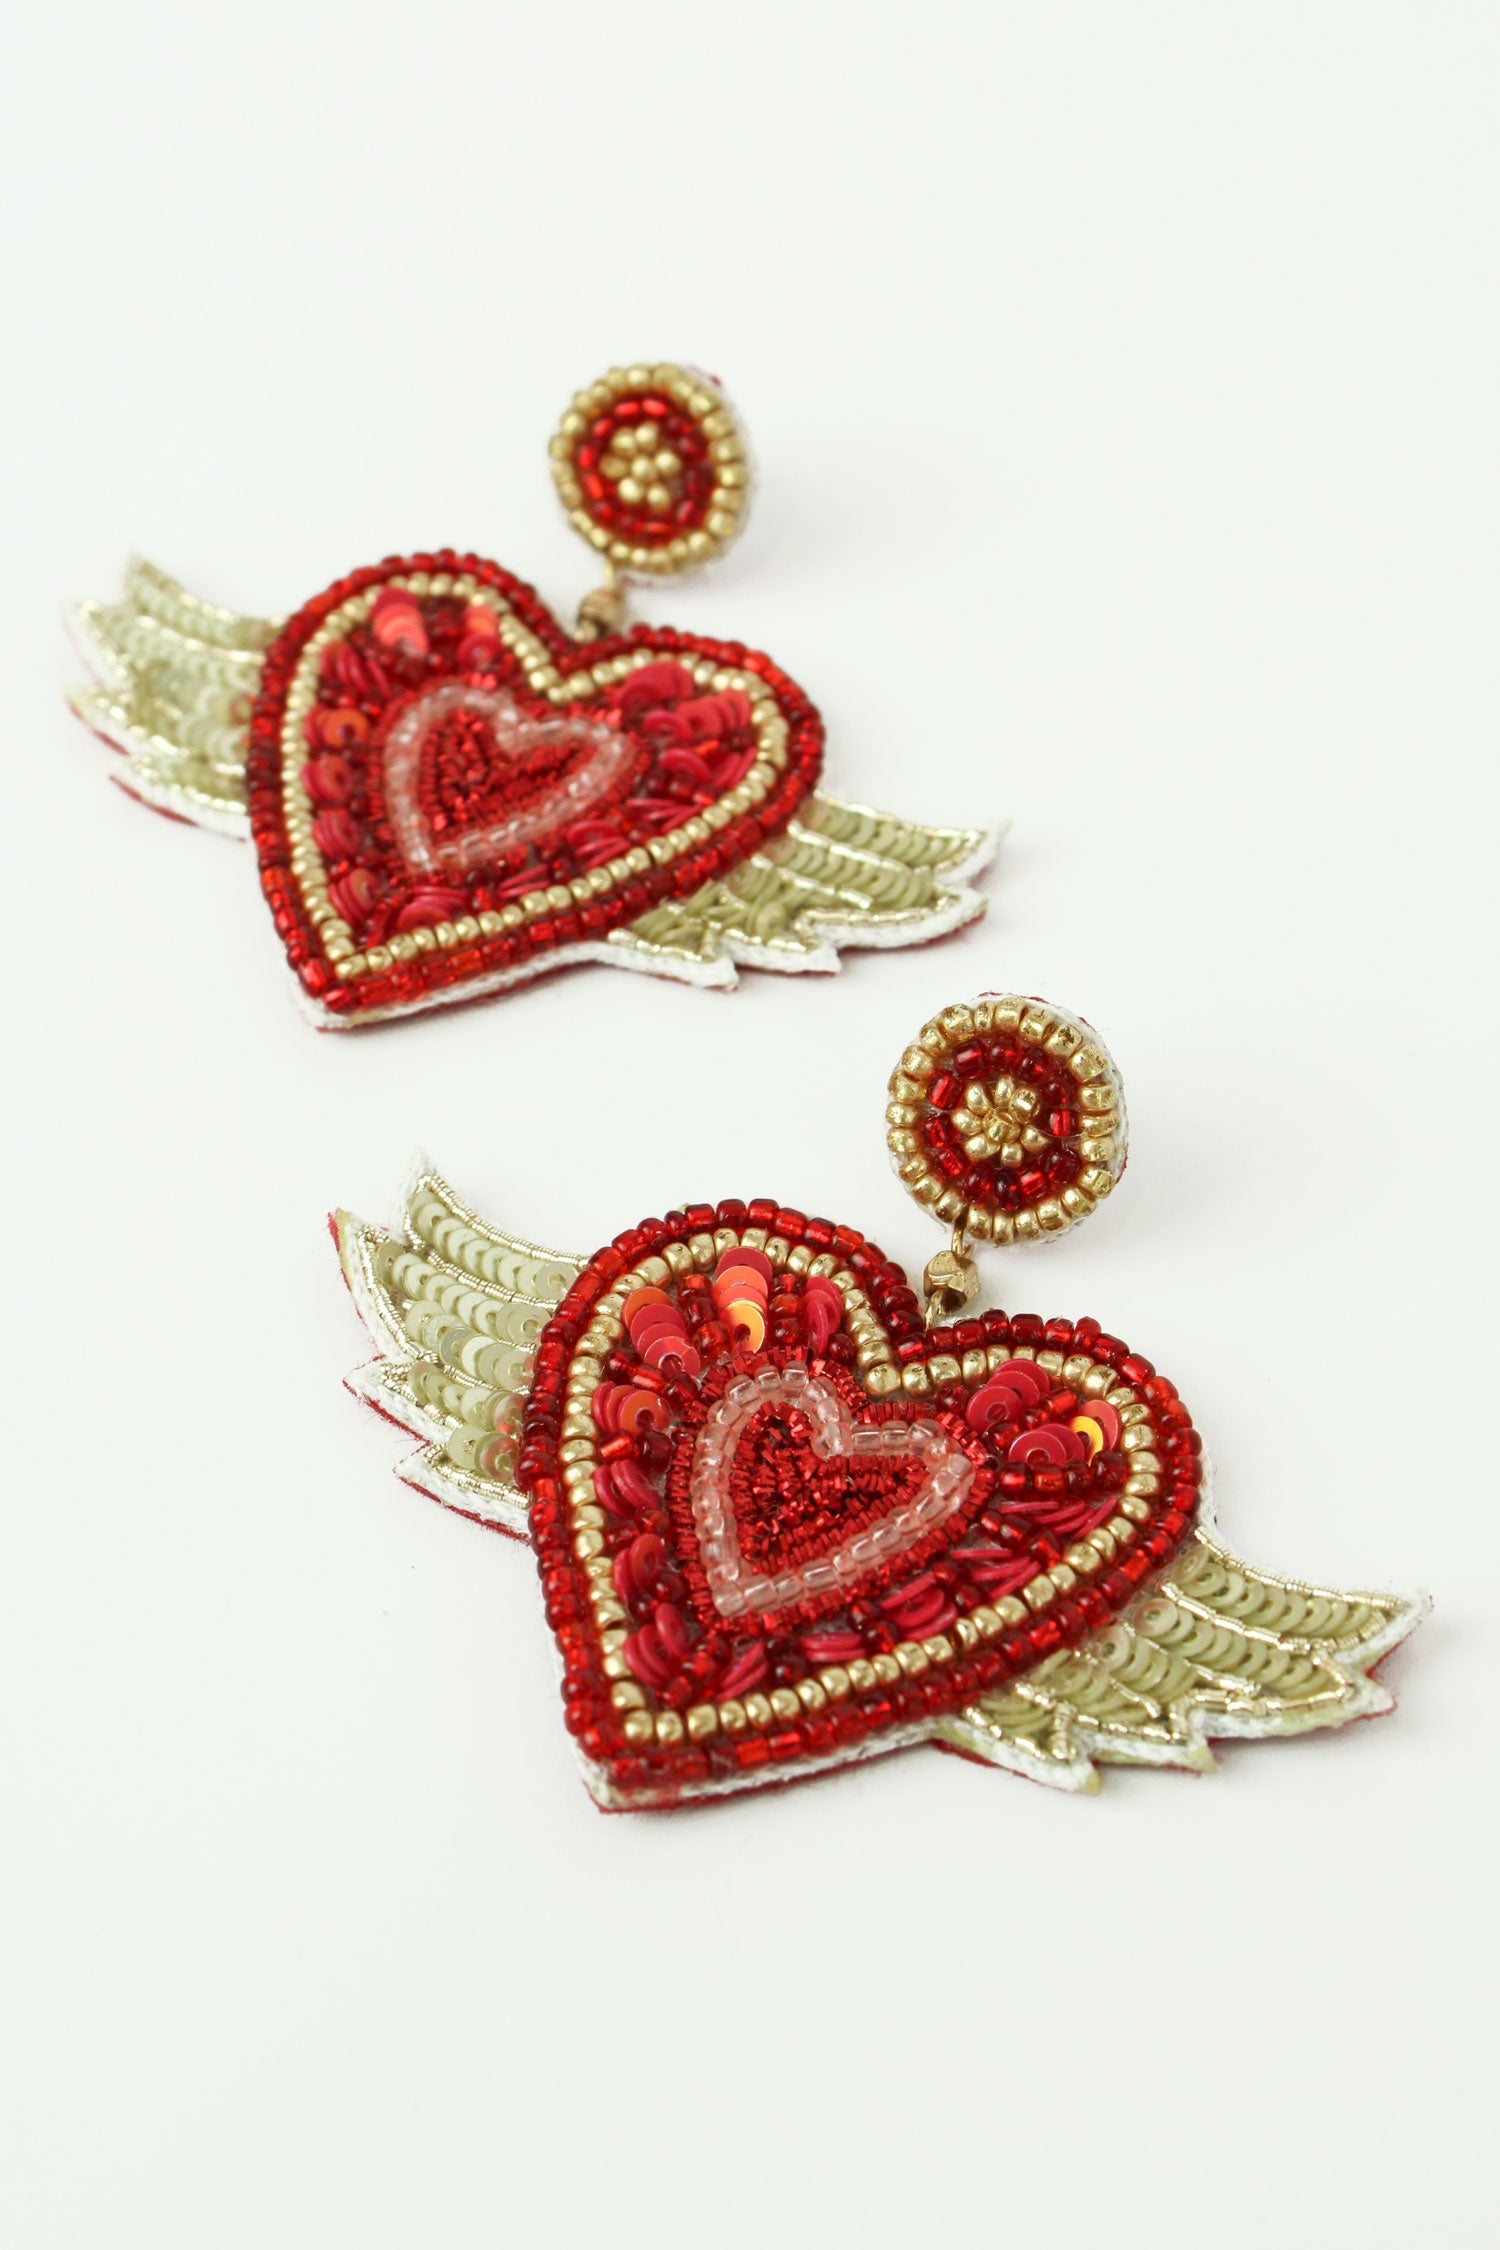 Flying Heart Earrings